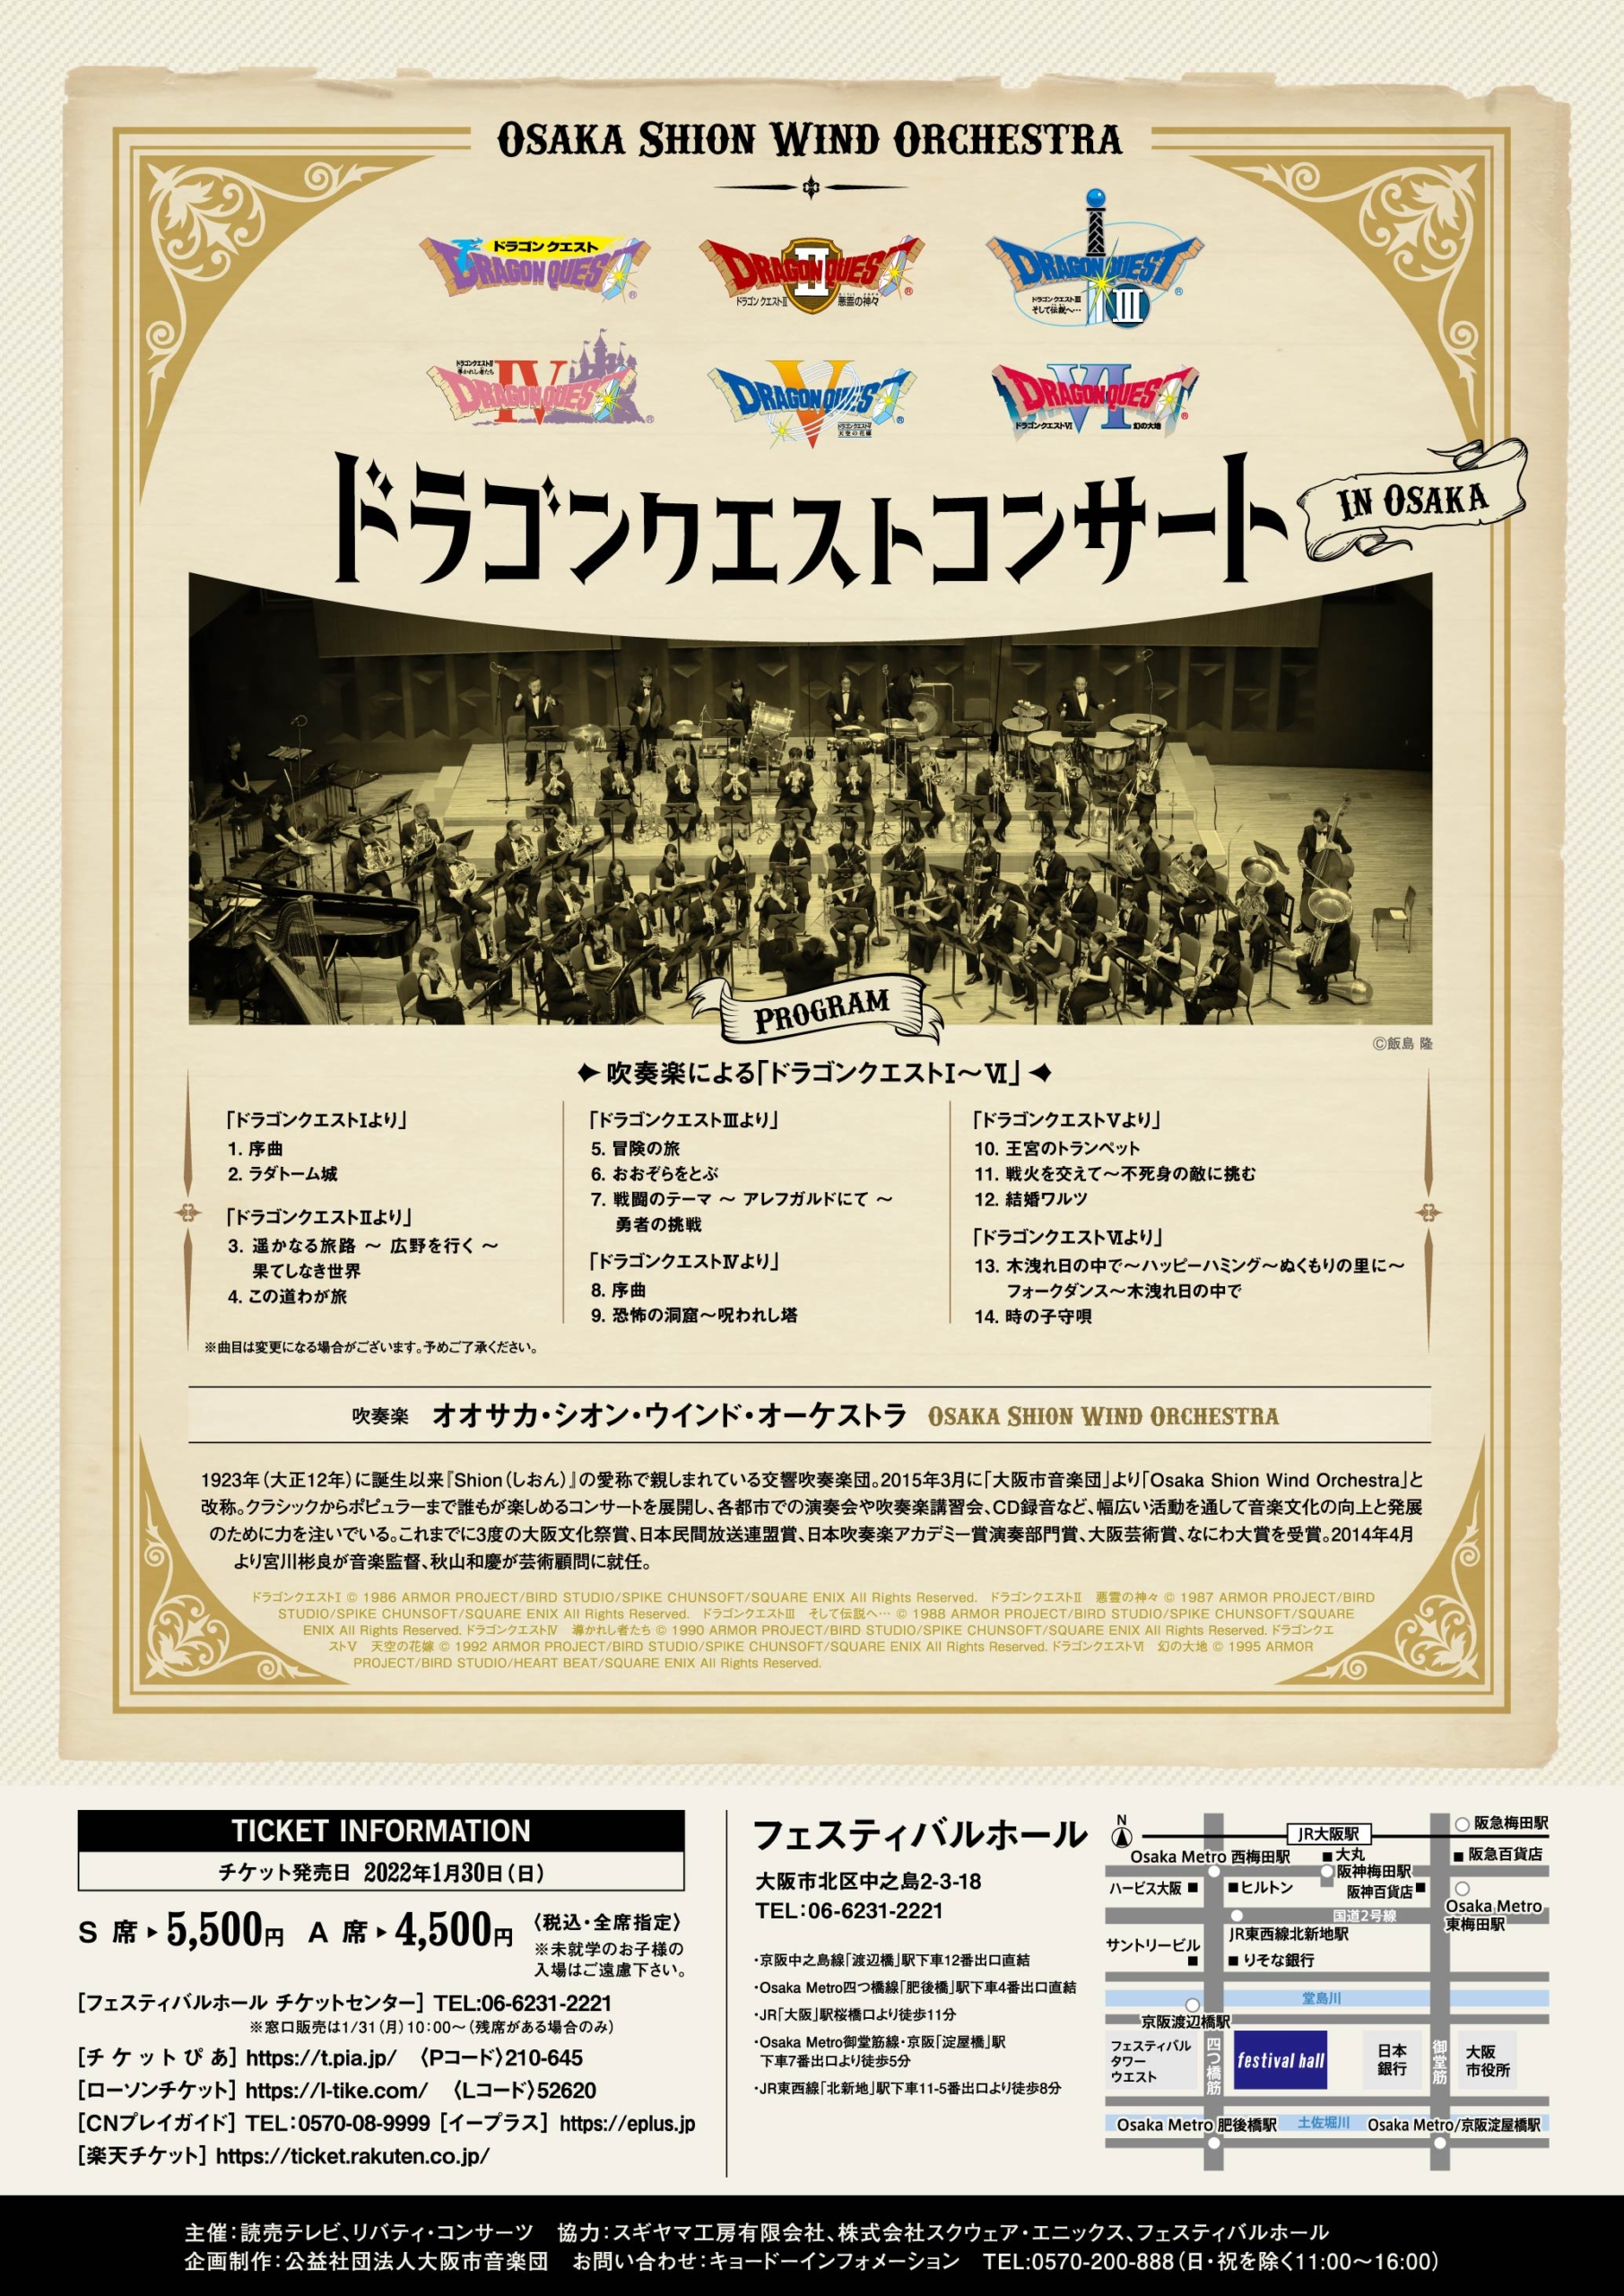 完売御礼 ドラゴンクエストコンサート In 大阪 コンサート情報 Osaka Shion Wind Orchestra 大阪市音楽団